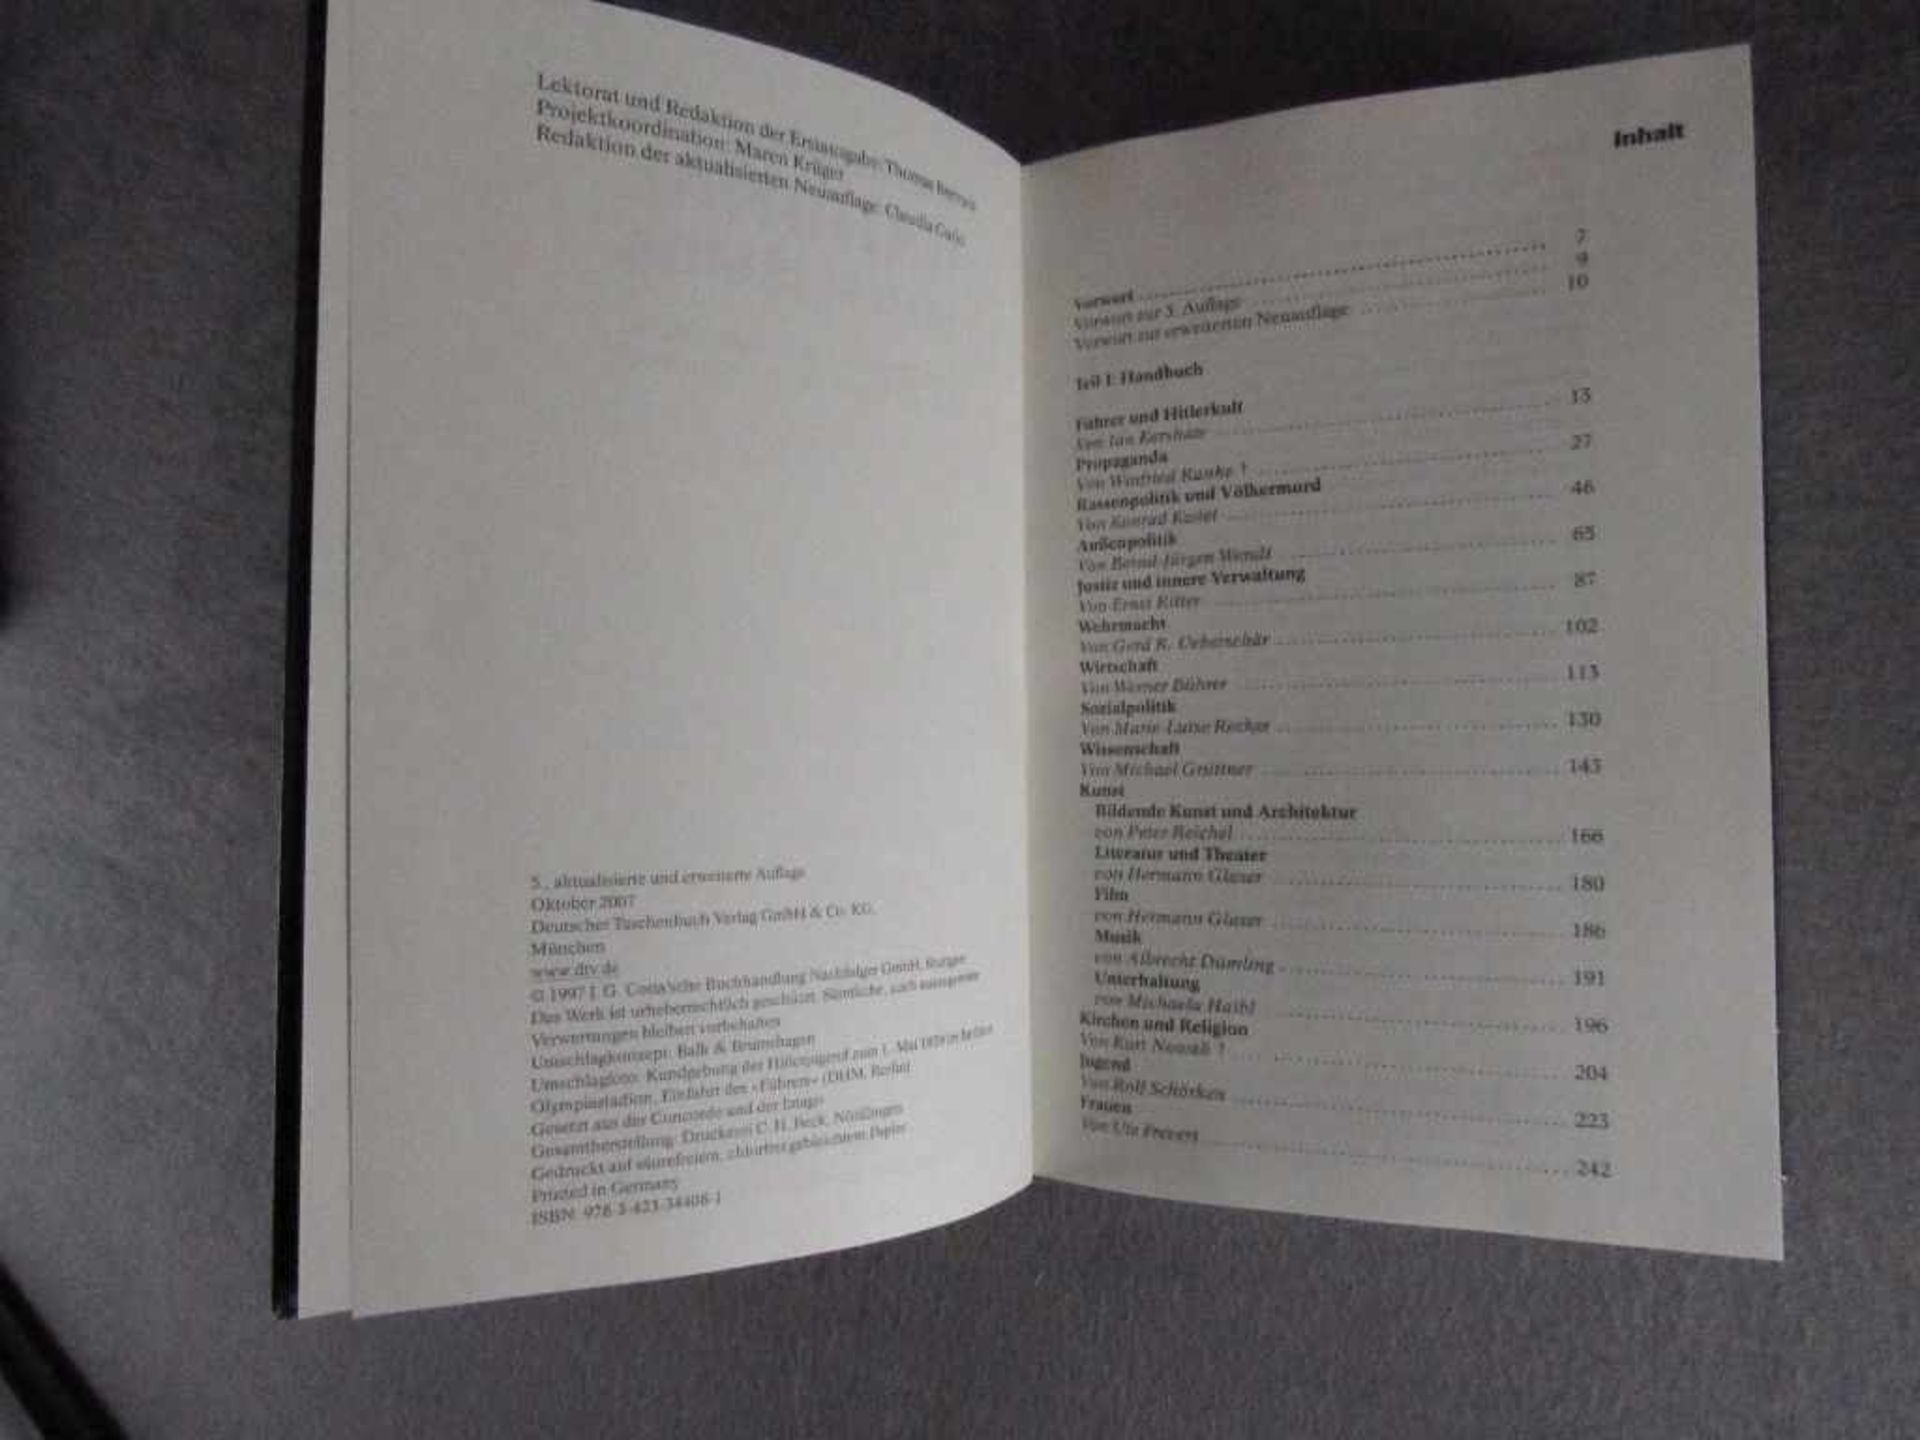 Seltenes Buch Nachschlagewerk Enzyklopädie des Nationalsozialismus - Bild 2 aus 2